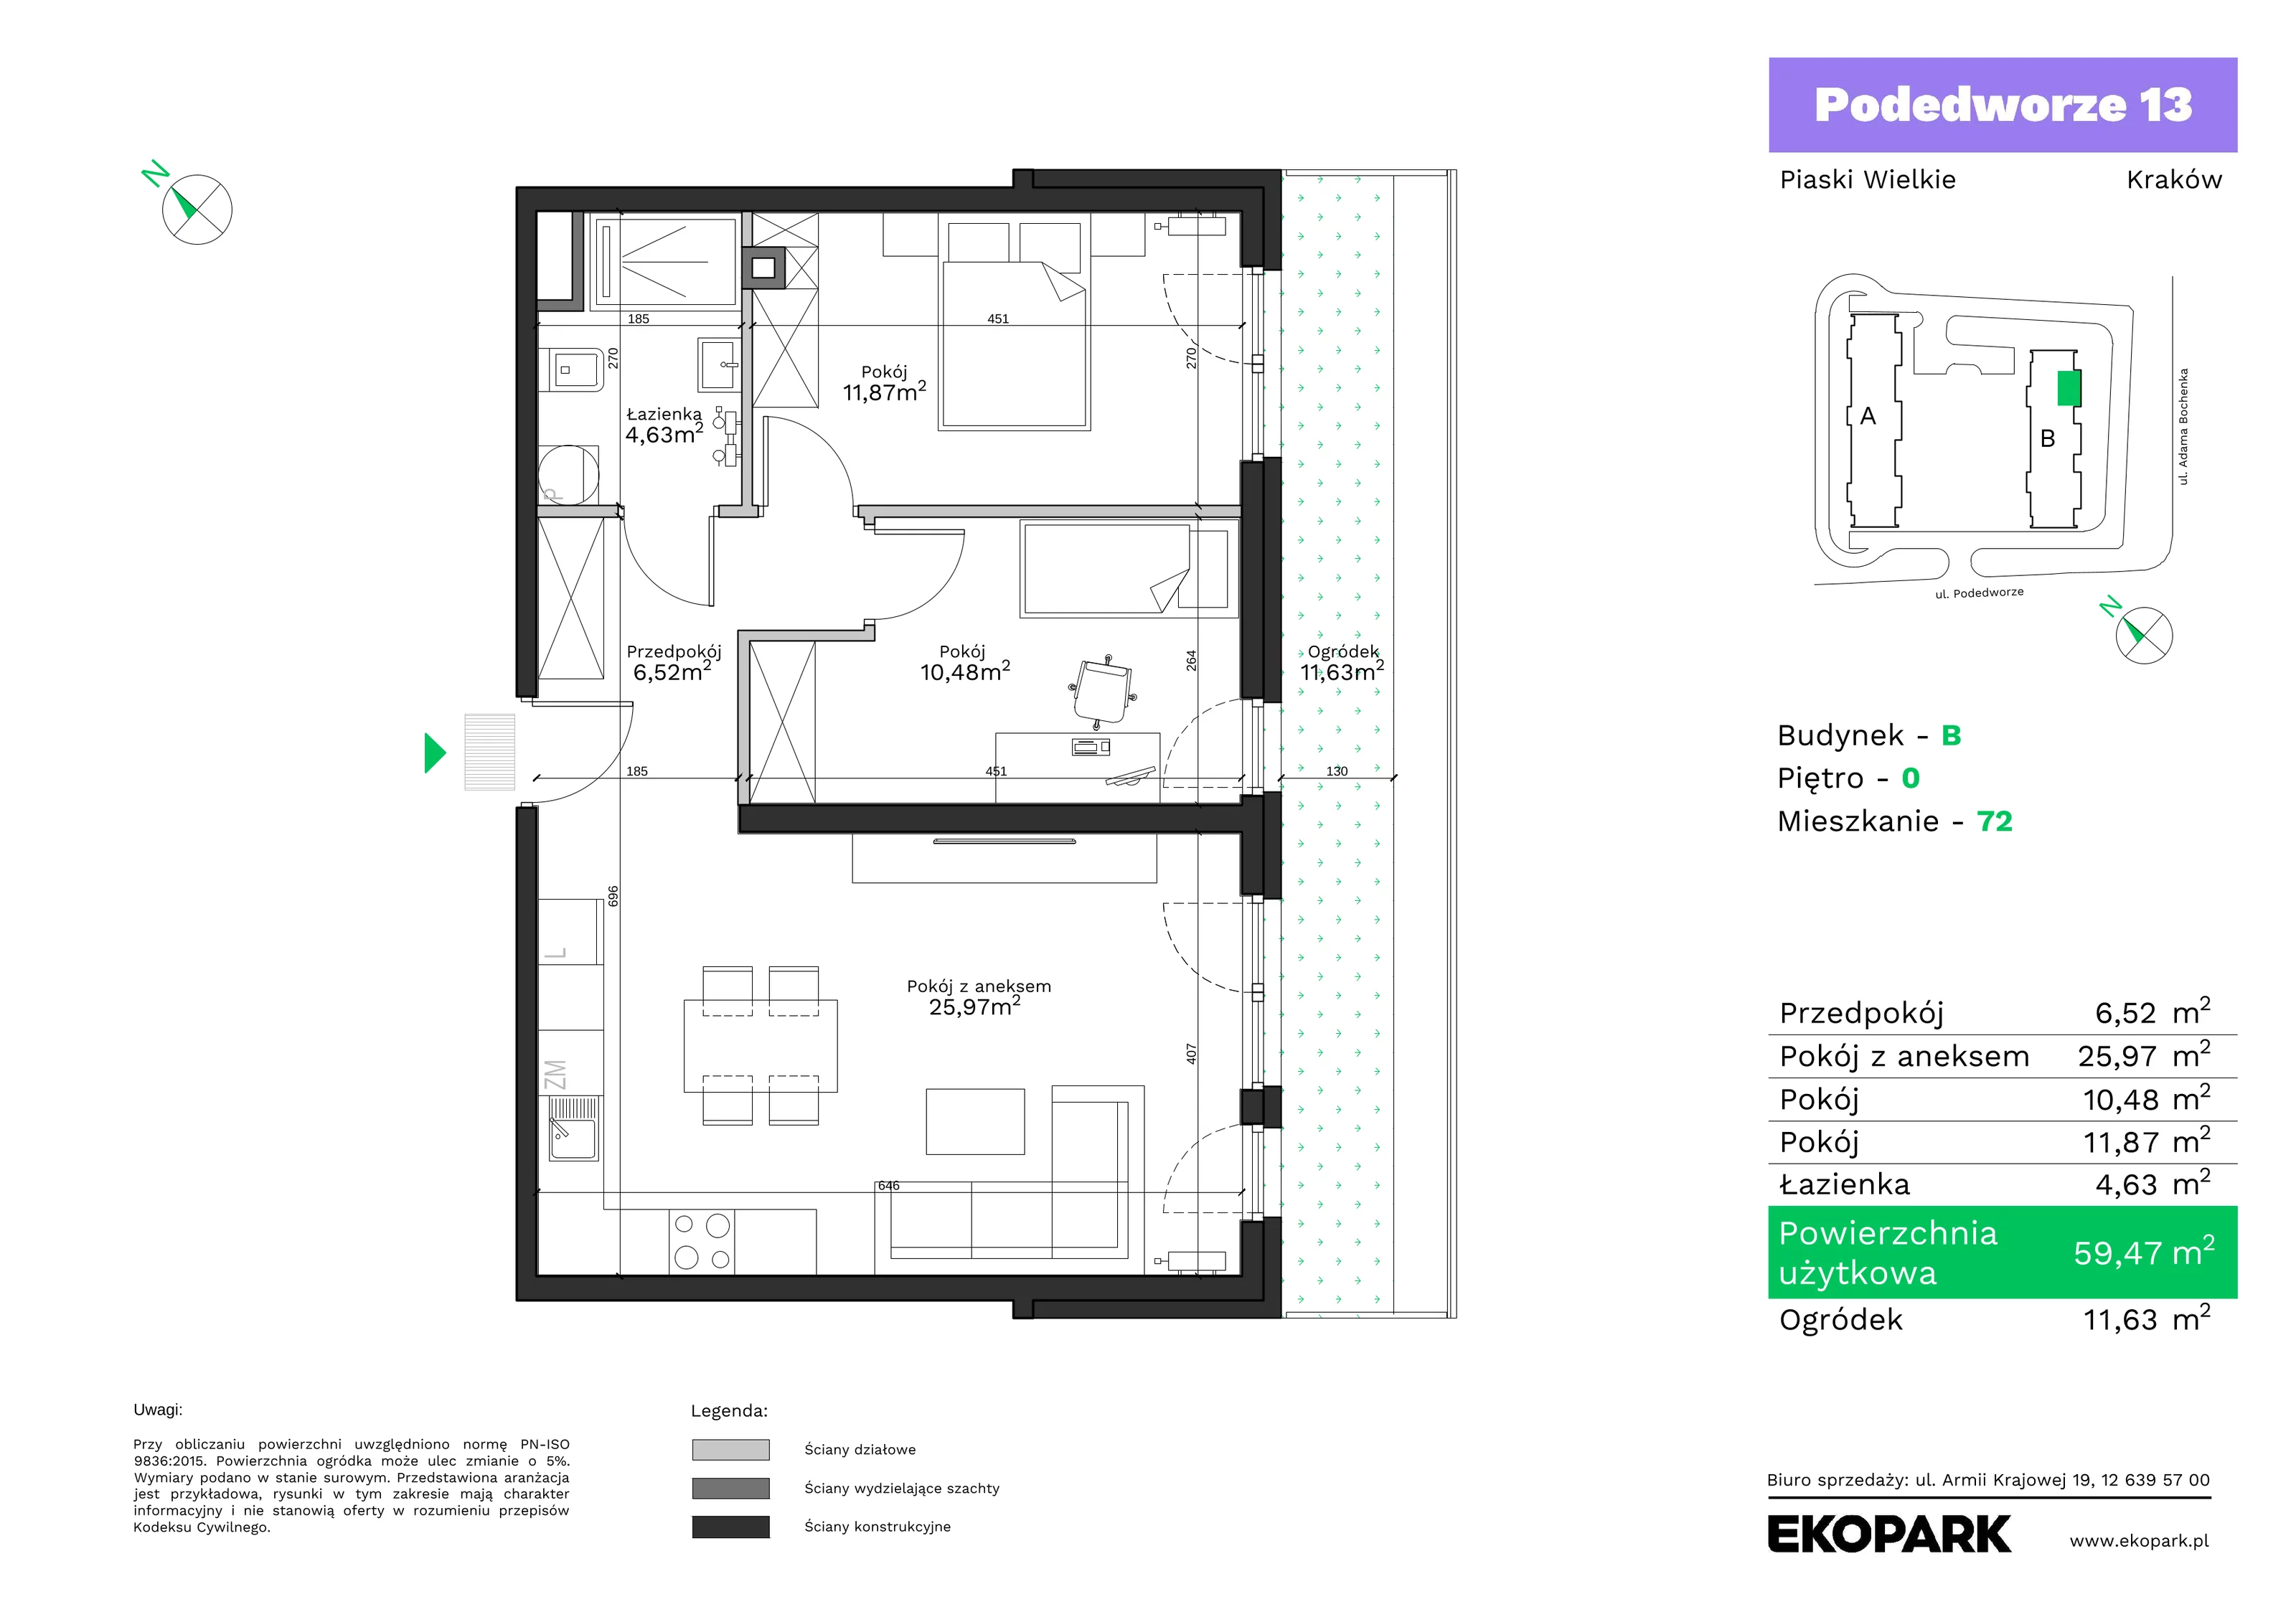 Mieszkanie 59,47 m², parter, oferta nr B72, Podedworze 13, Kraków, Podgórze Duchackie, Piaski Wielkie, ul. Podedworze 13